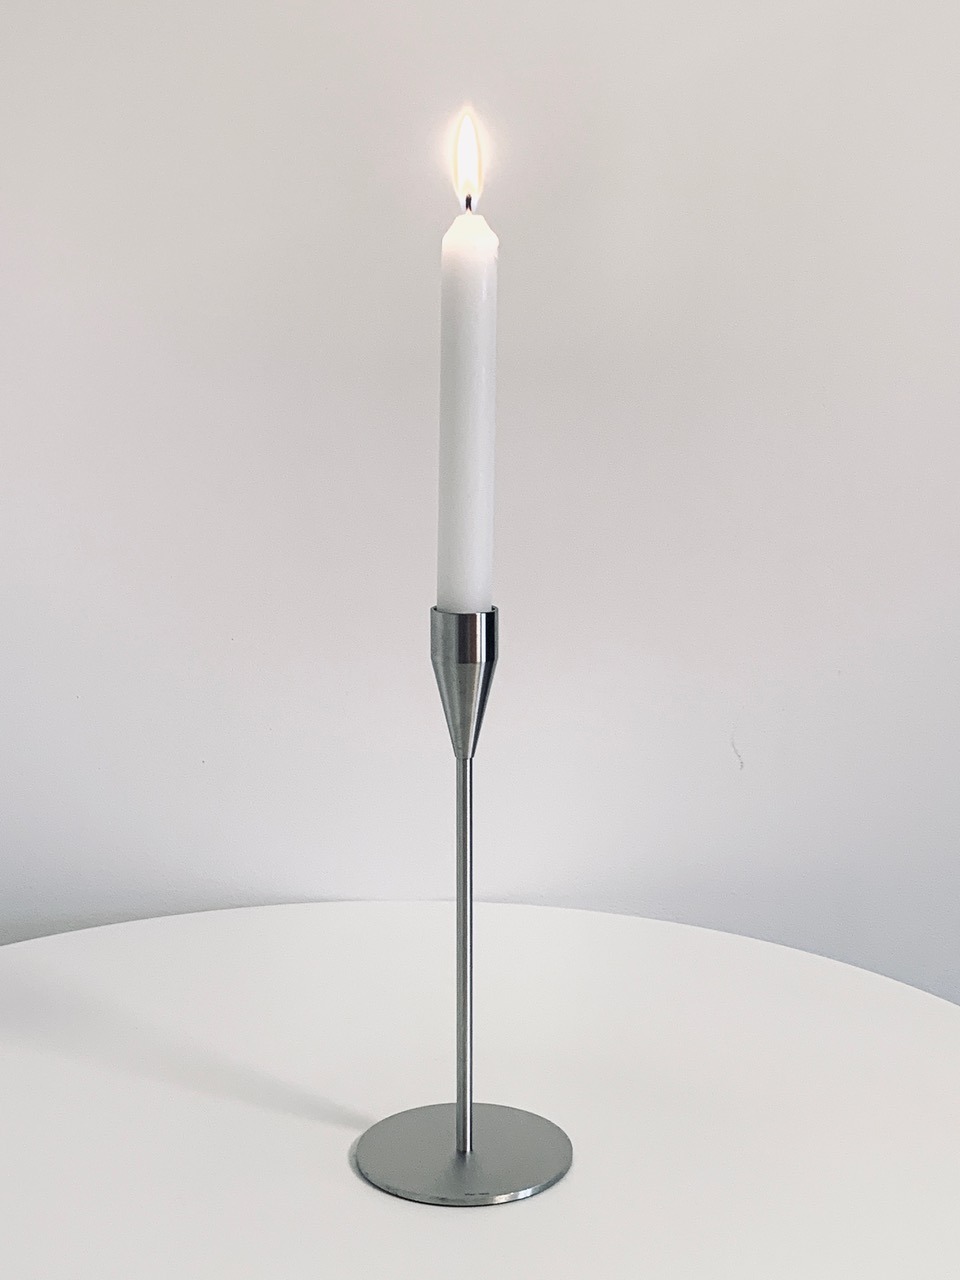 Bild des in dieser Anzeige angebotenen Piet Hein Kerzenhalters Venus